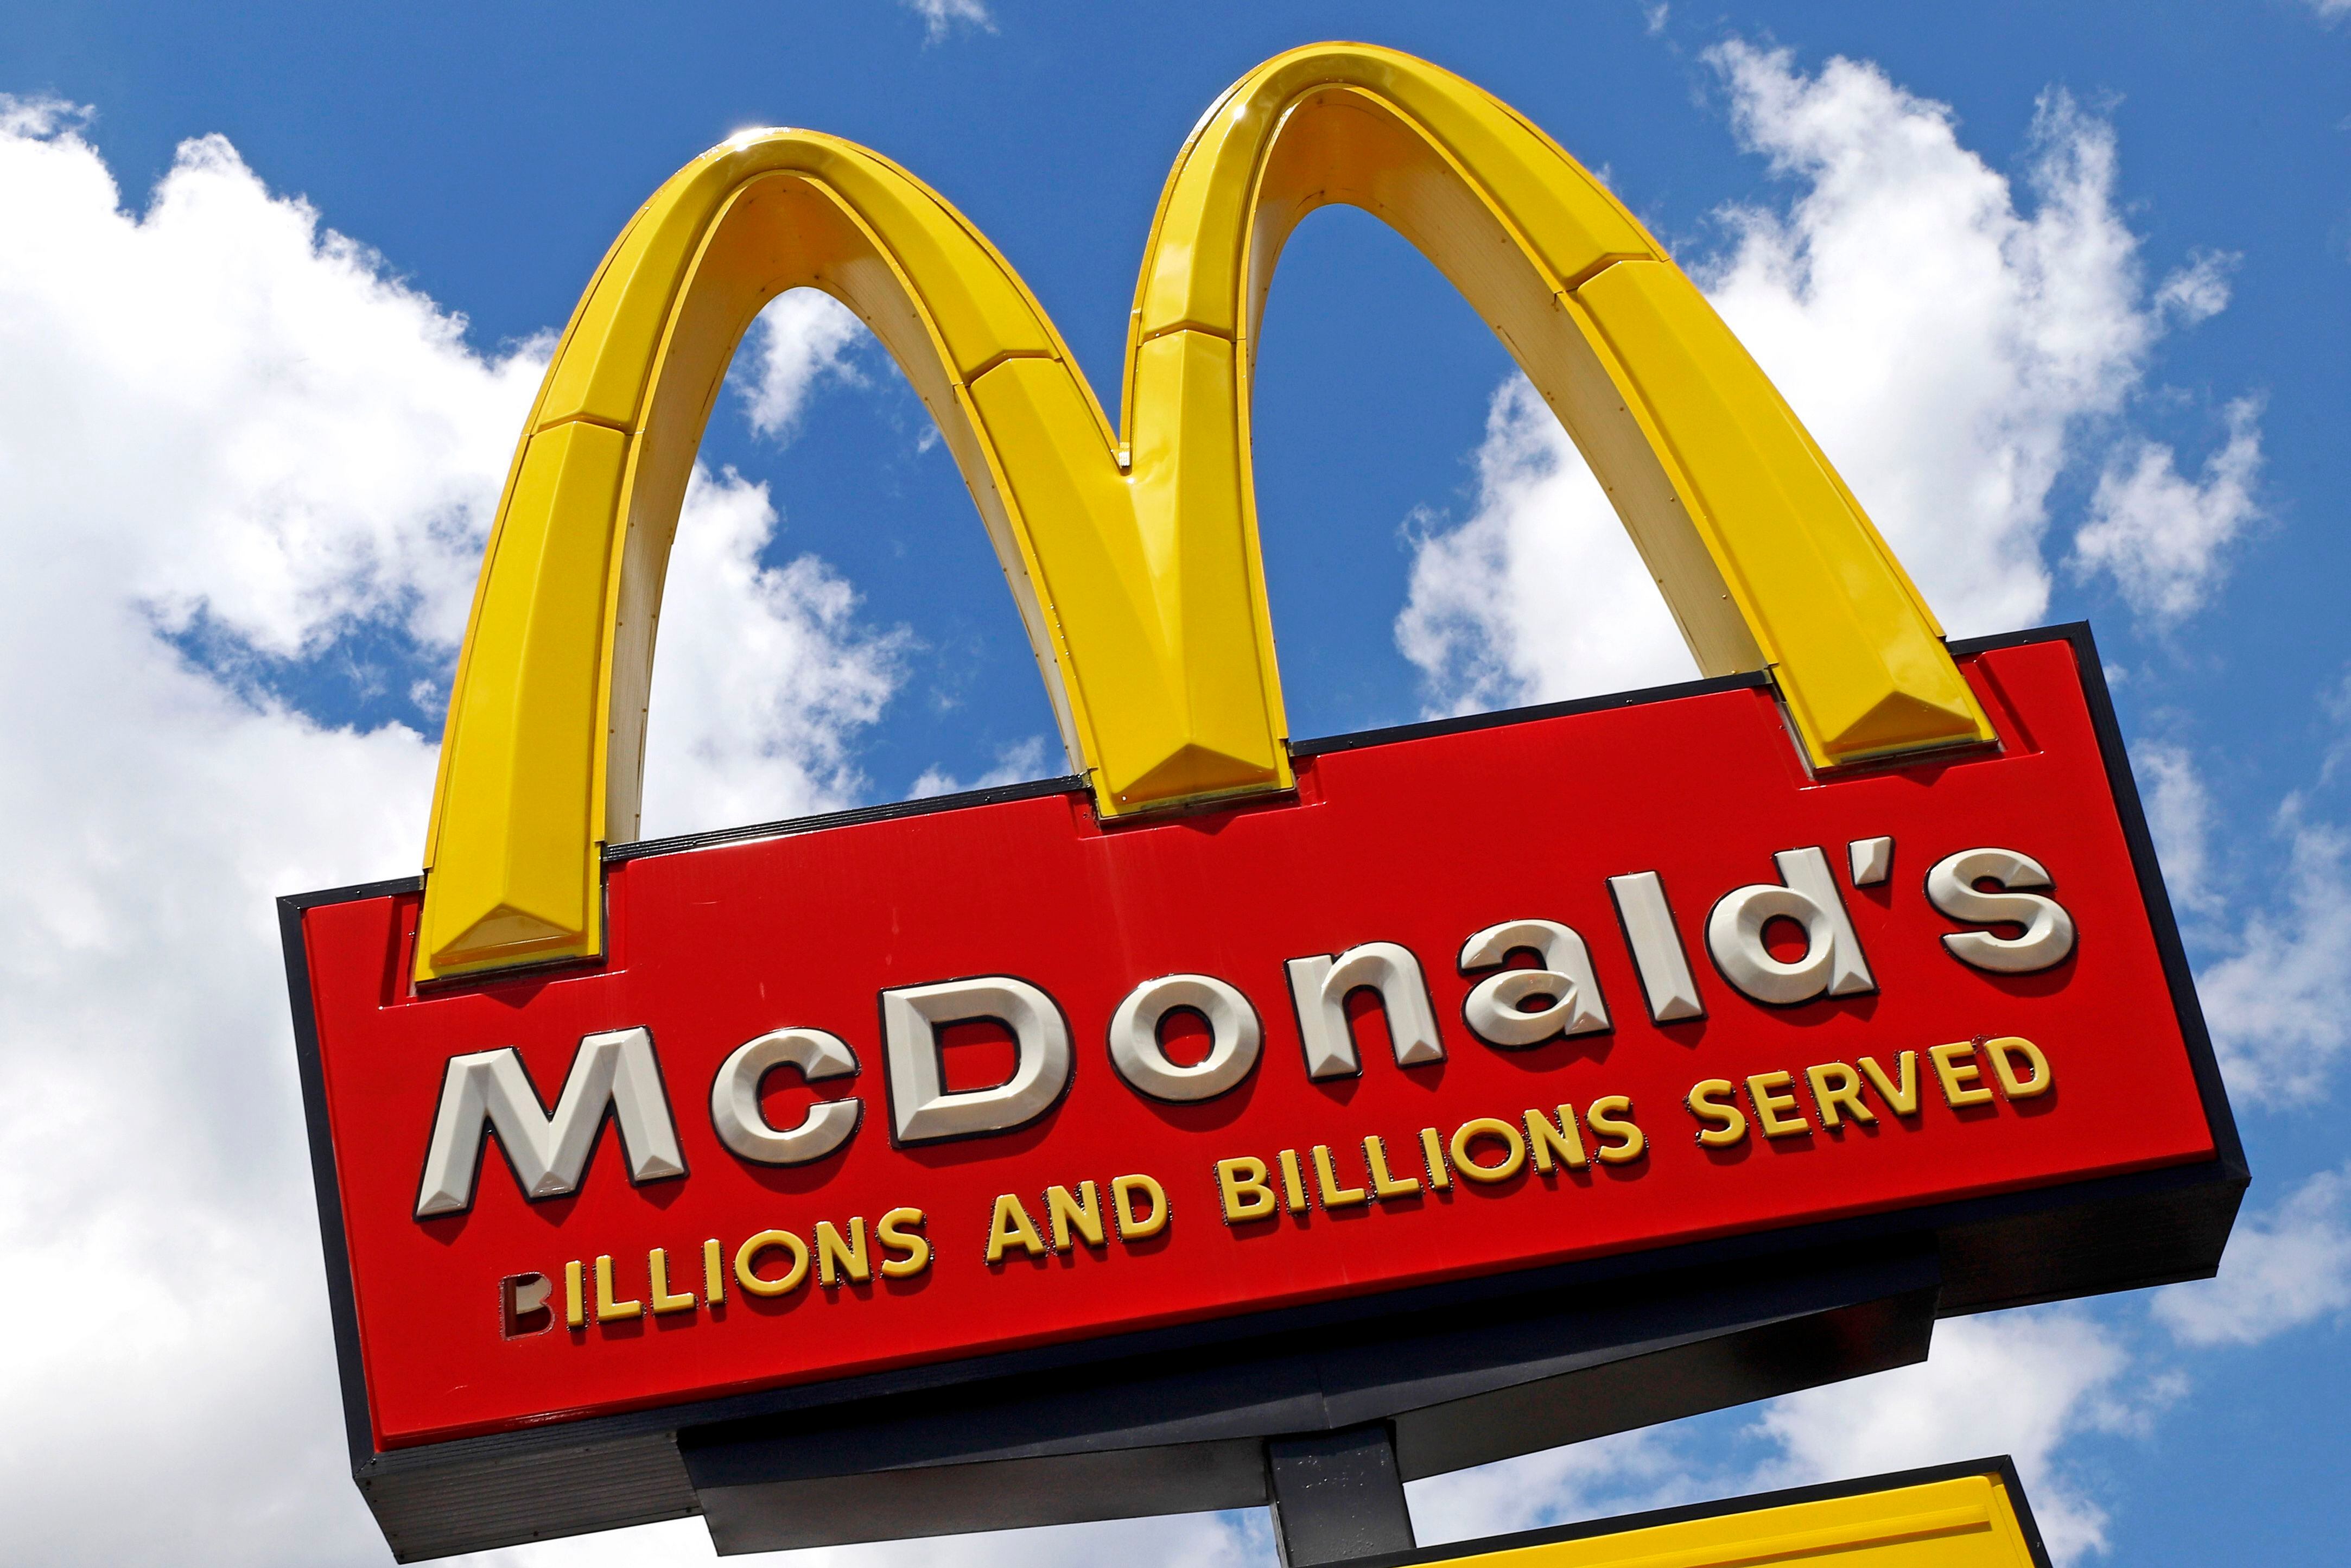 ¡A comer más vegetales! McDonald’s expande venta de la hamburguesa McPlant en EU